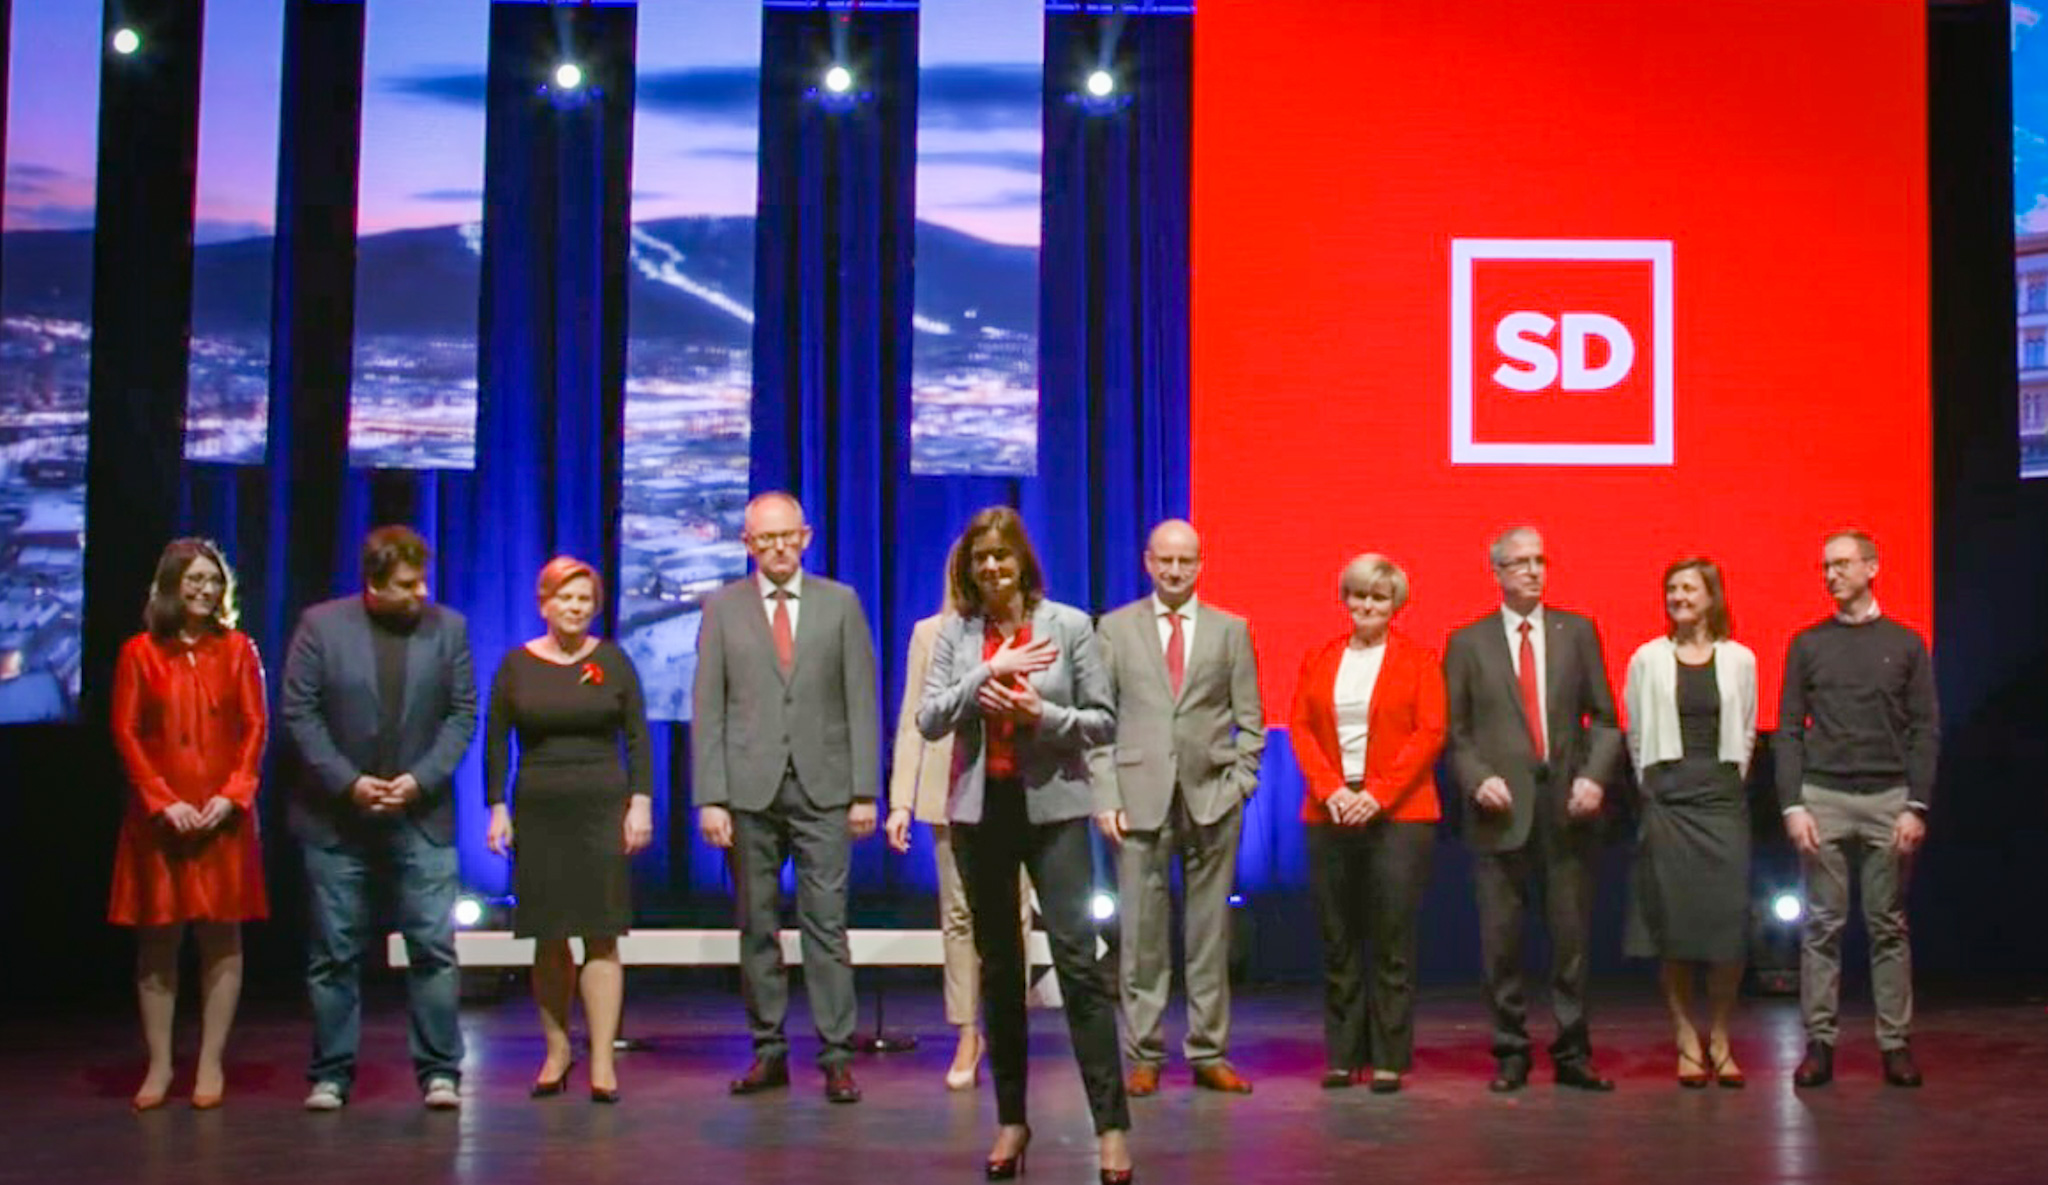 Rezultati volitev za SD dokaz želje ljudi po drugačni vladi